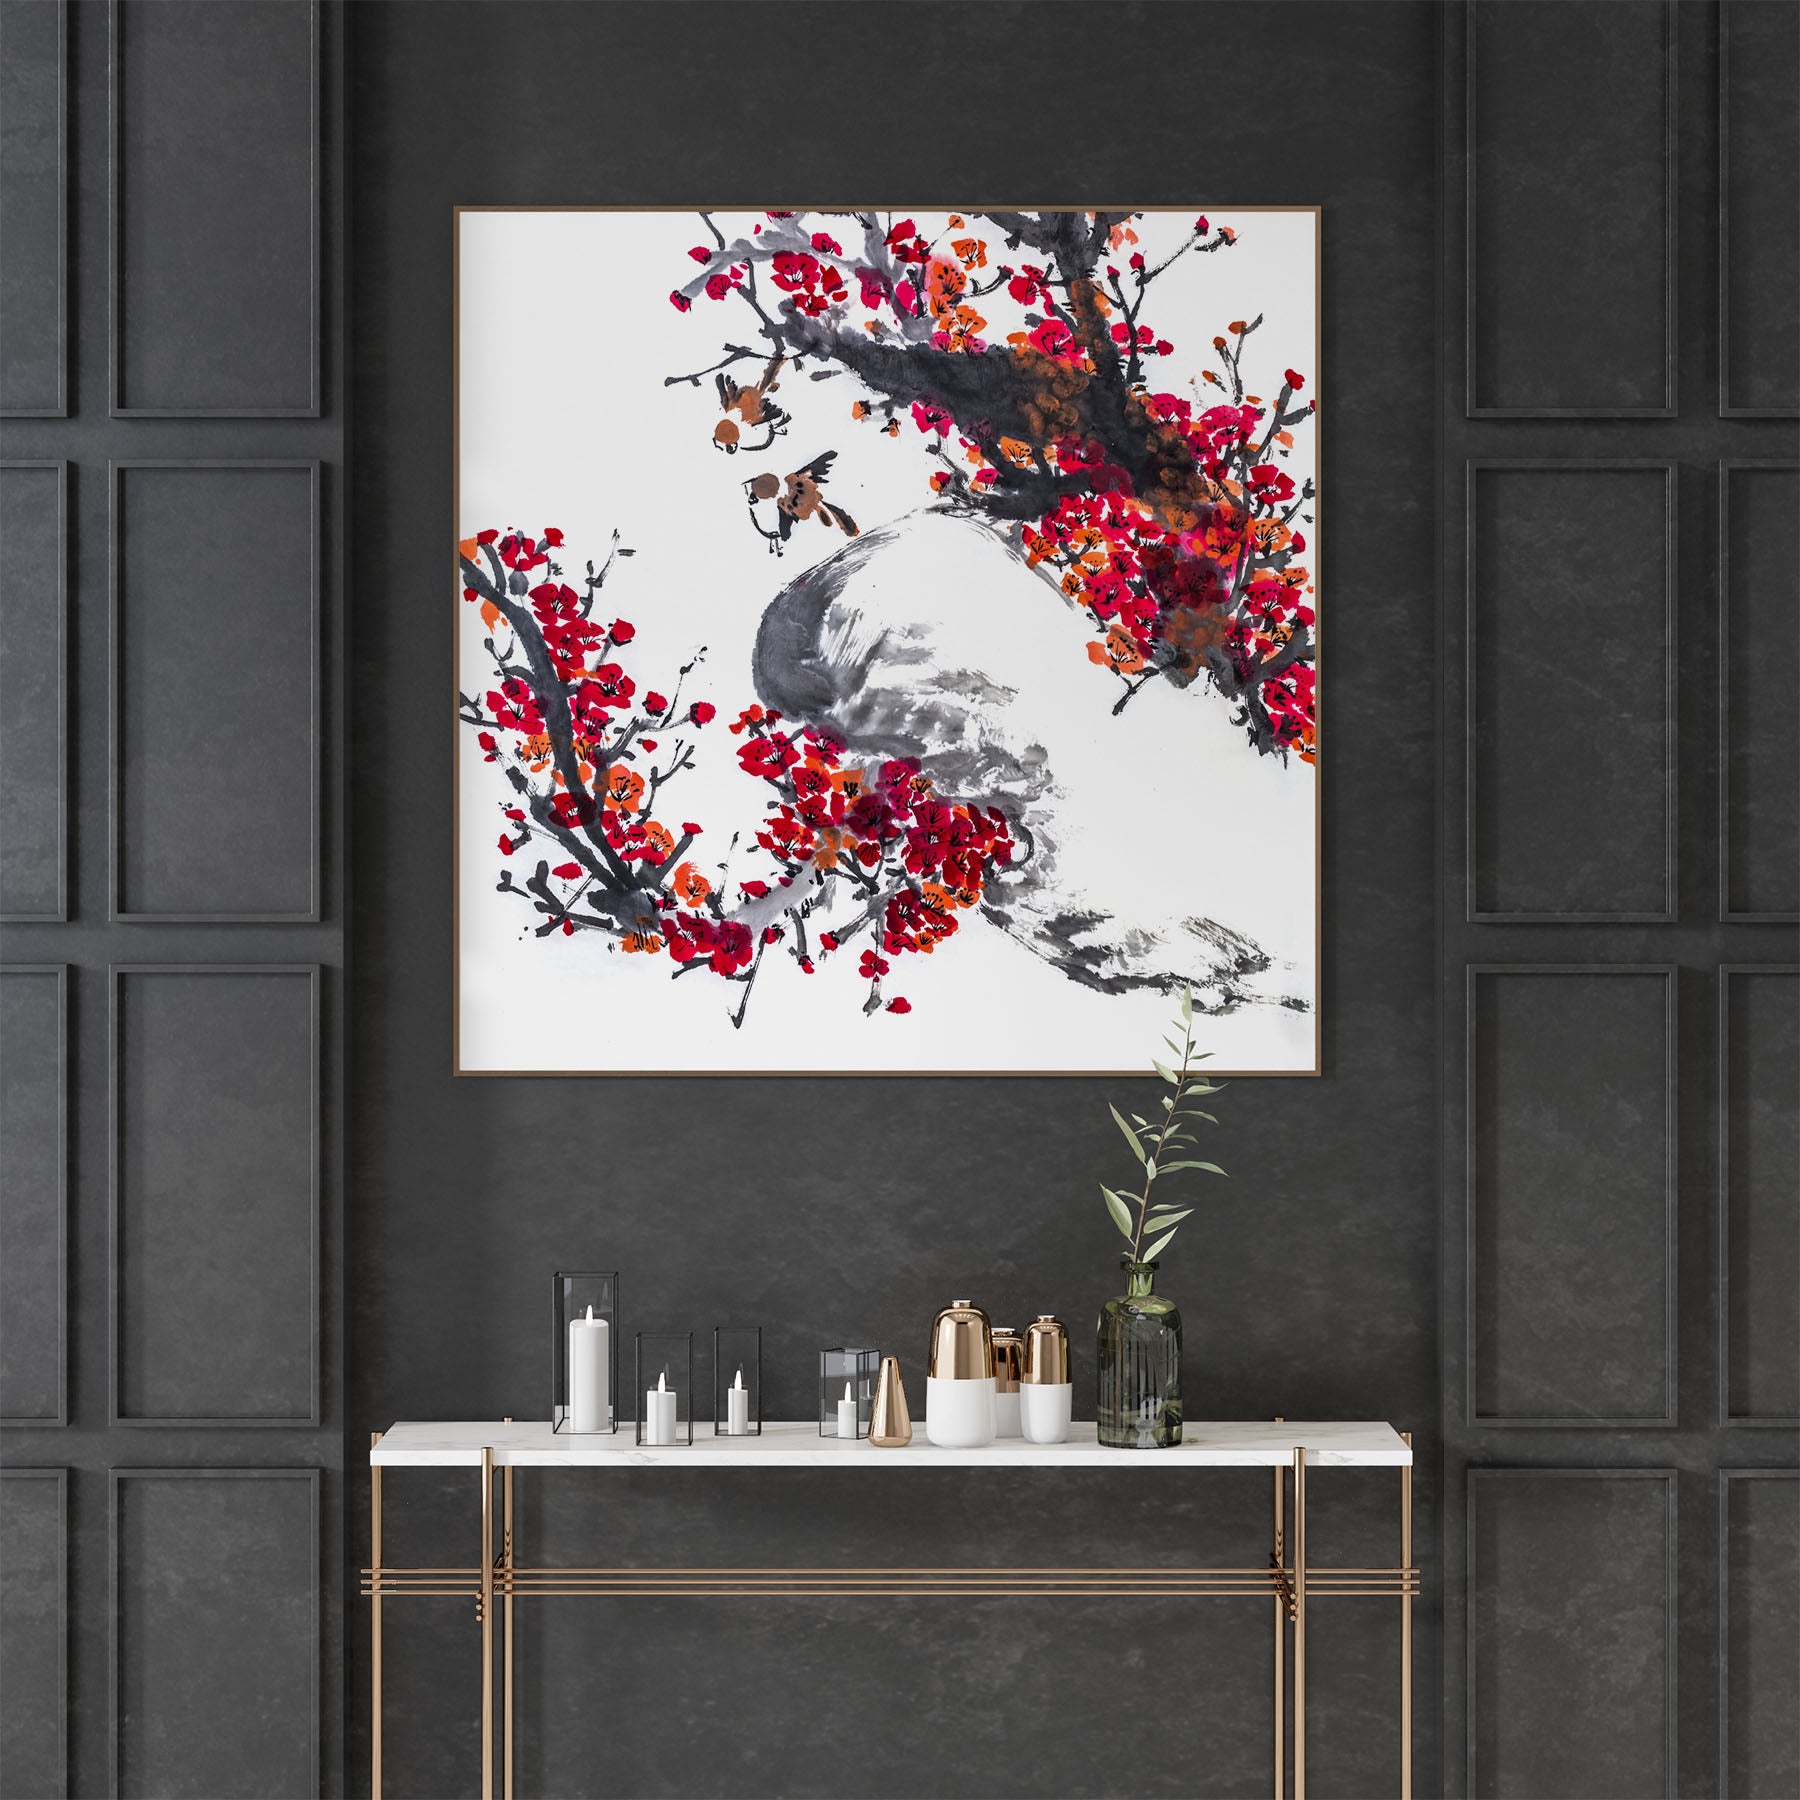 Japanese watercolor artwork framed above sideboard